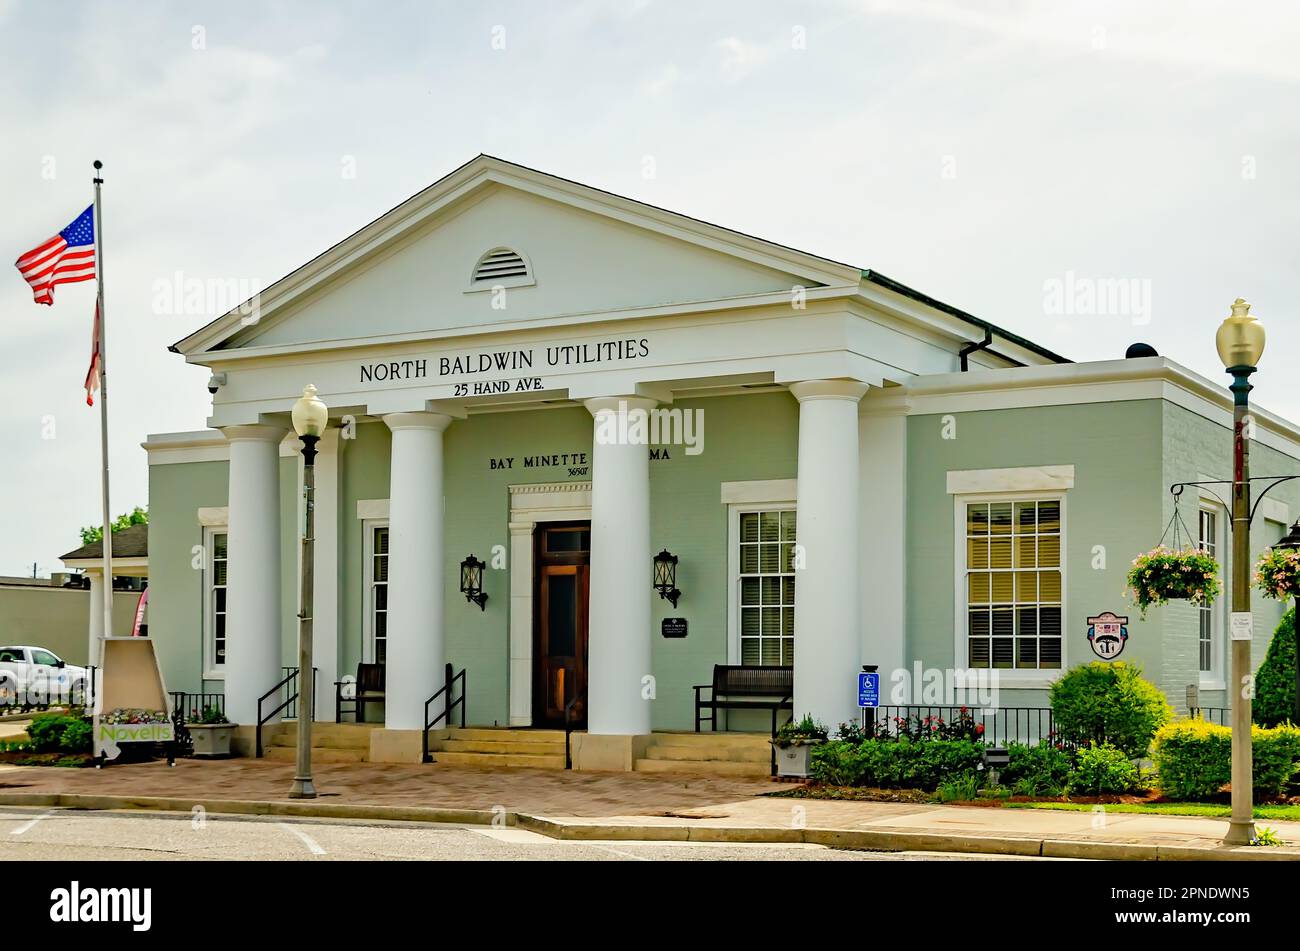 North Baldwin Utilities ist im alten Postamt von Bay Minette, 16. April 2023, in Bay Minette, Alabama, abgebildet. Das Gebäude wurde 1937 errichtet. Stockfoto